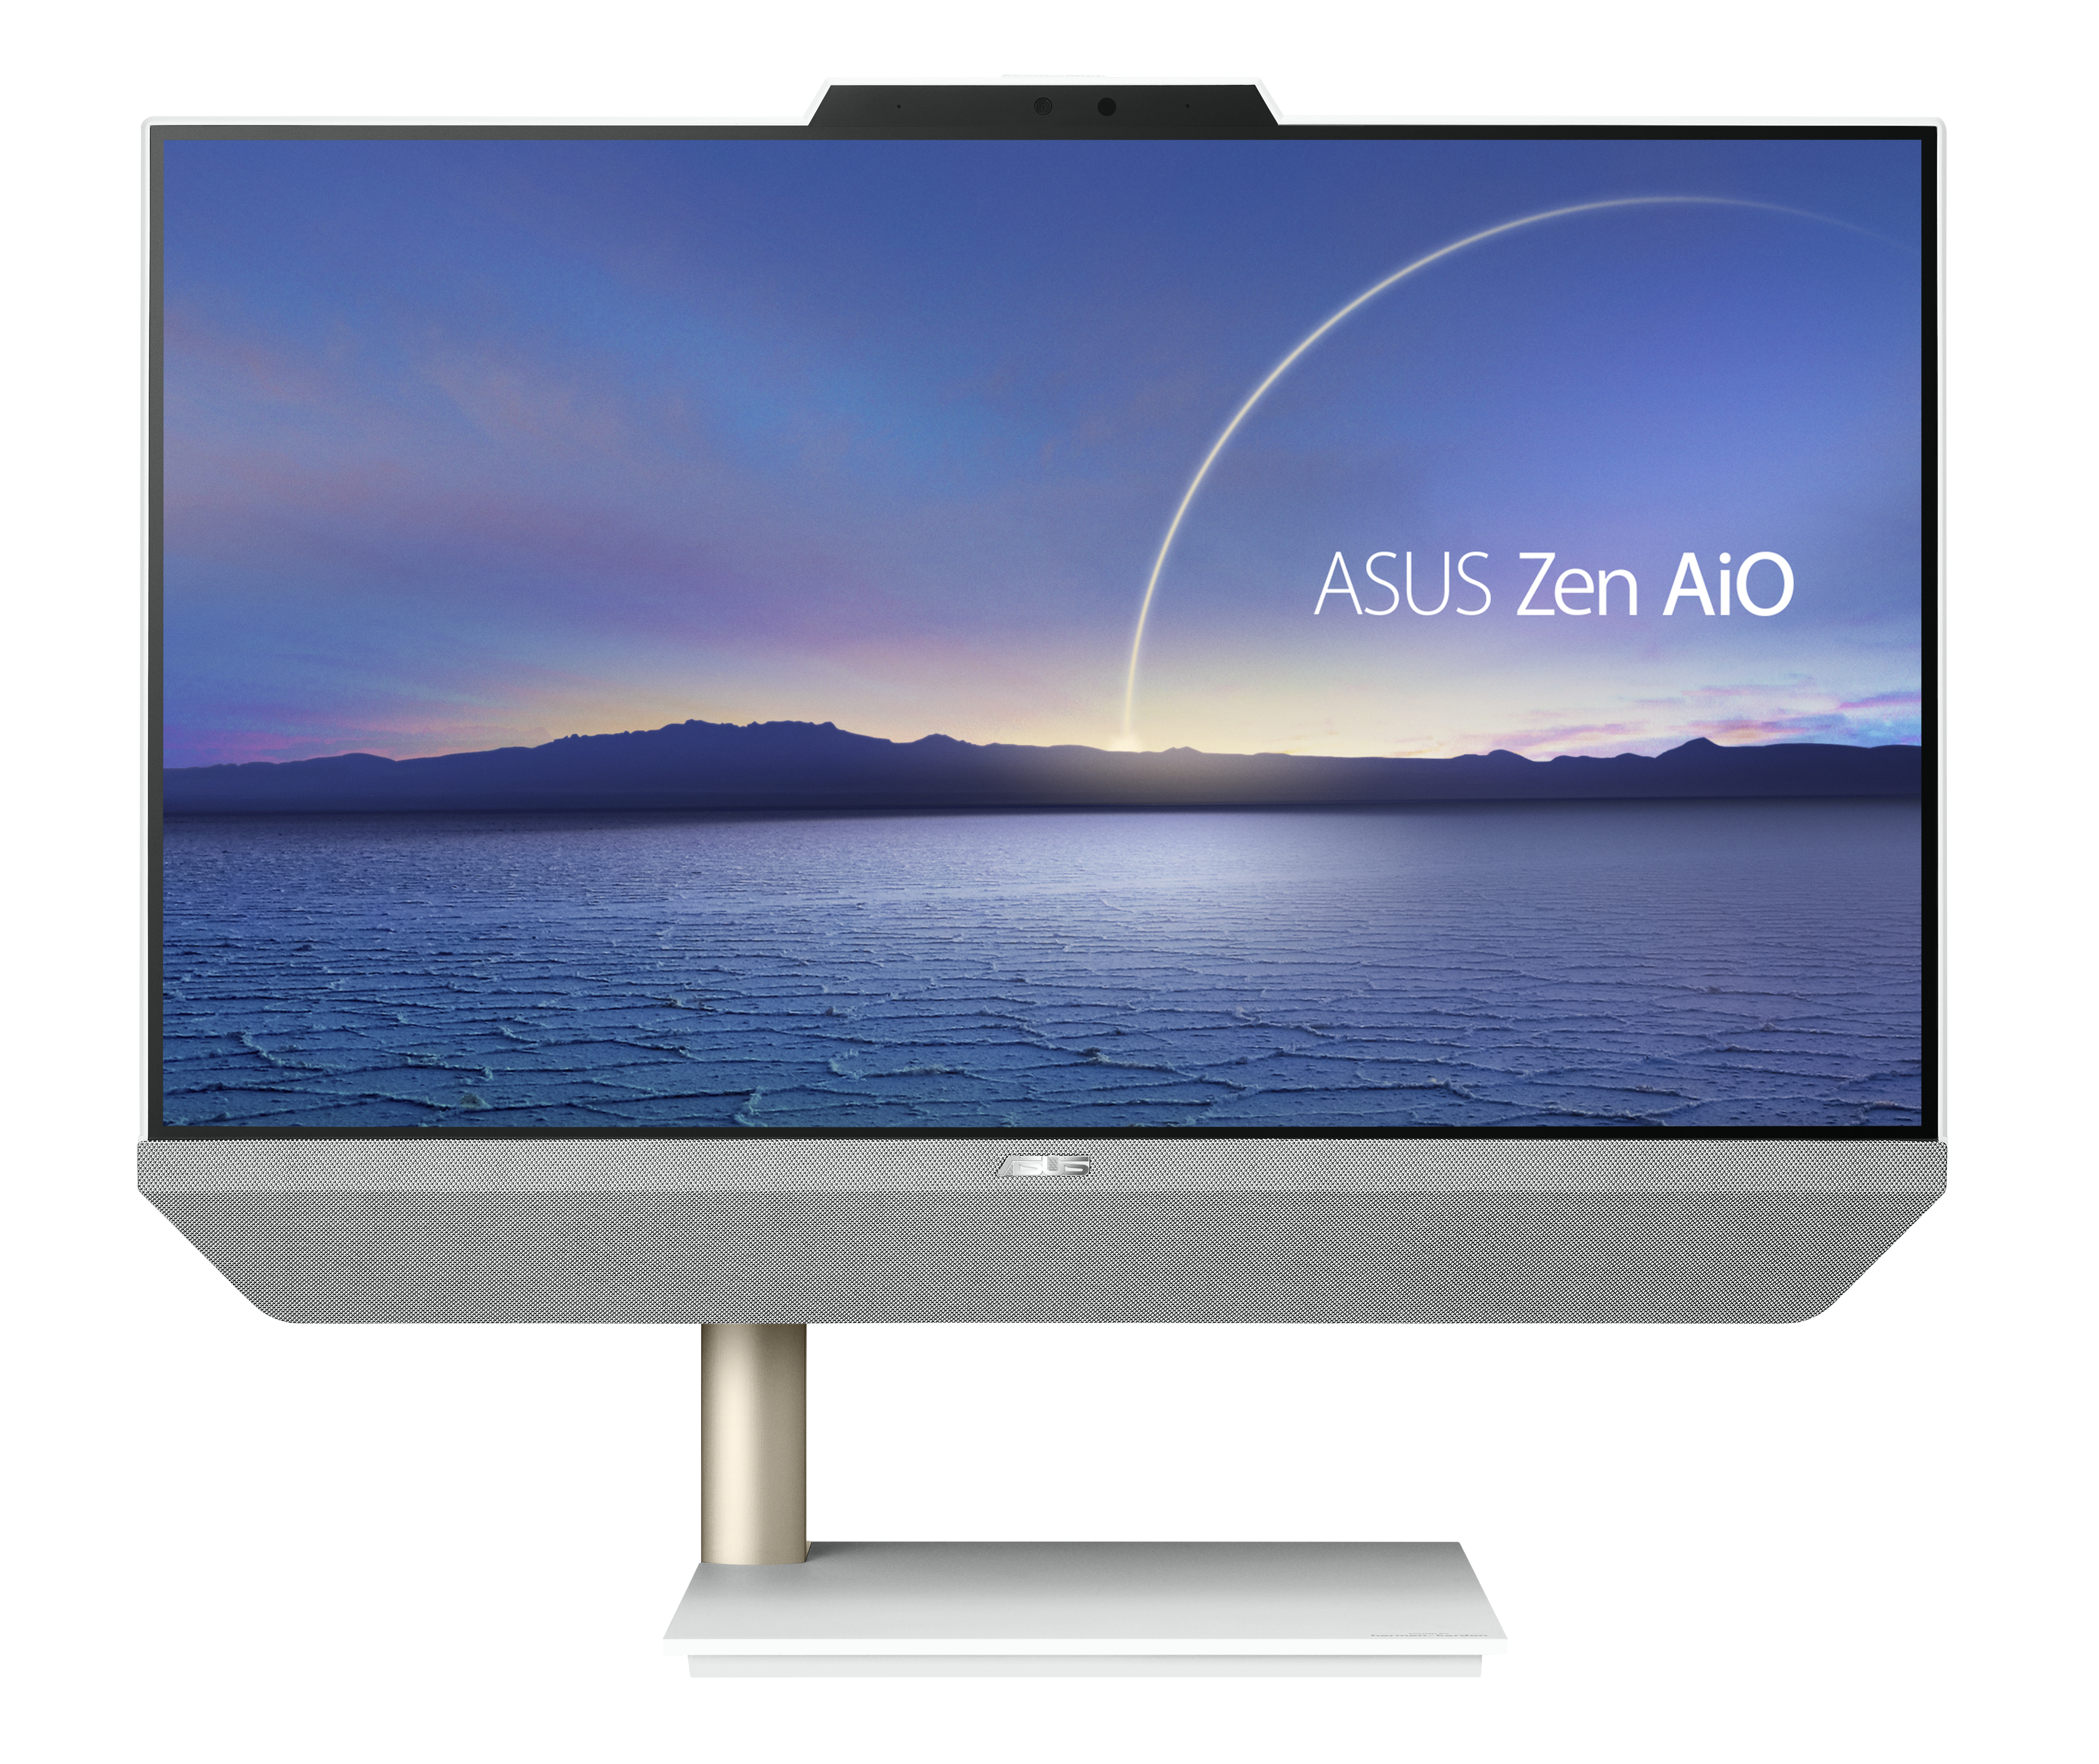 ASUS Zen AiO A5200WFAK-WA011M